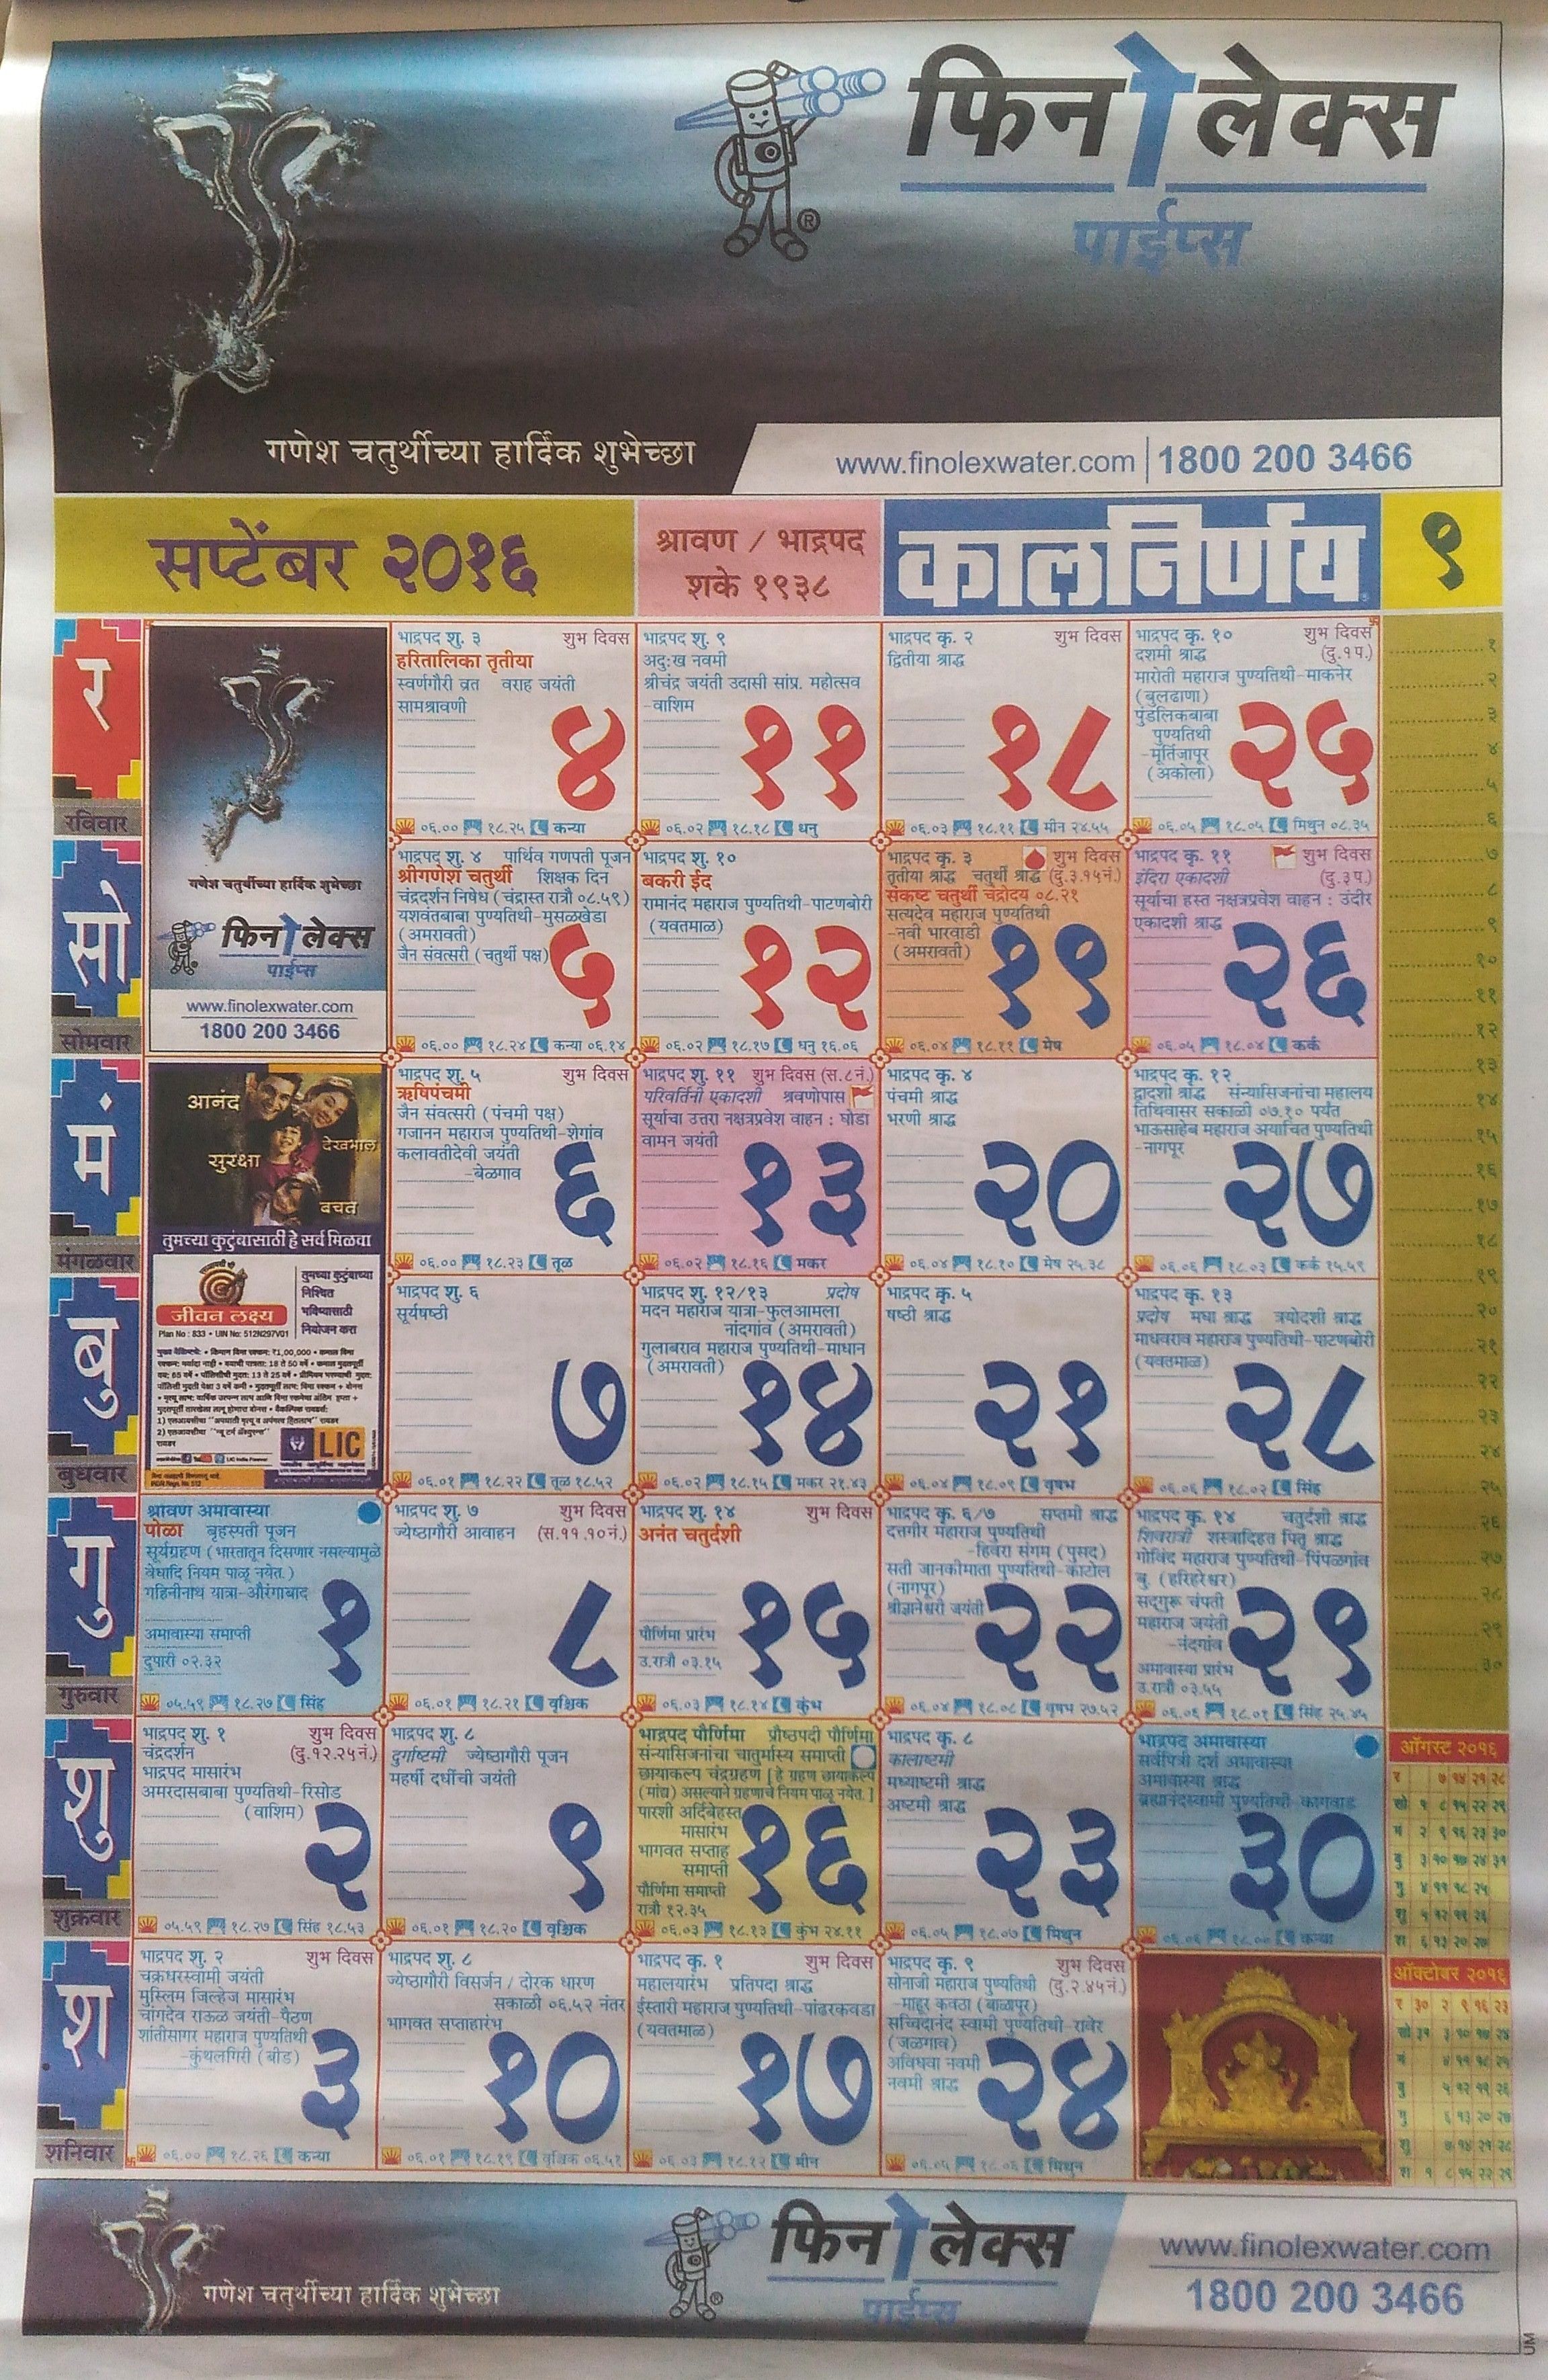 kalnirnay marathi calendar 2013 free download for mobile